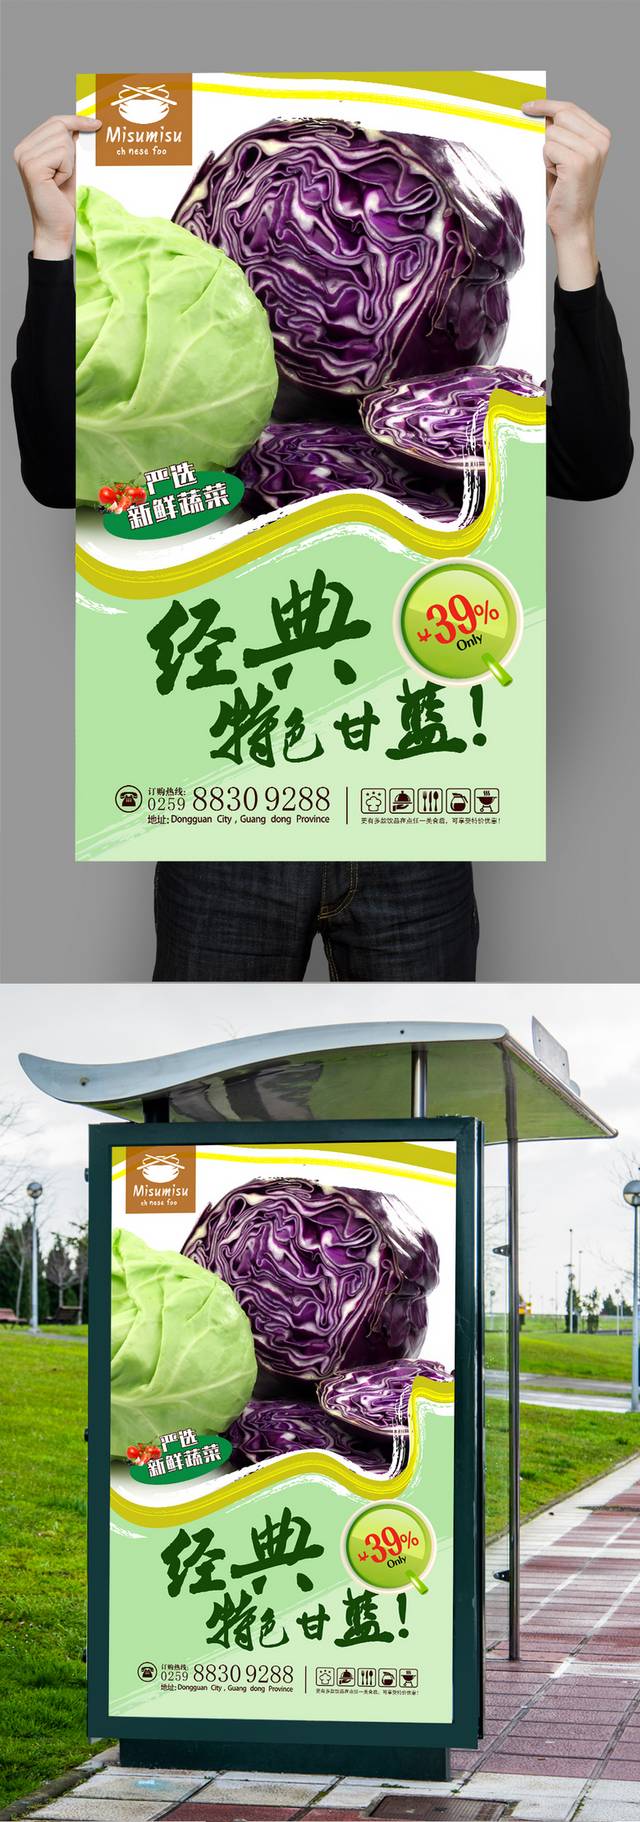 高档清新甘蓝宣传海报设计